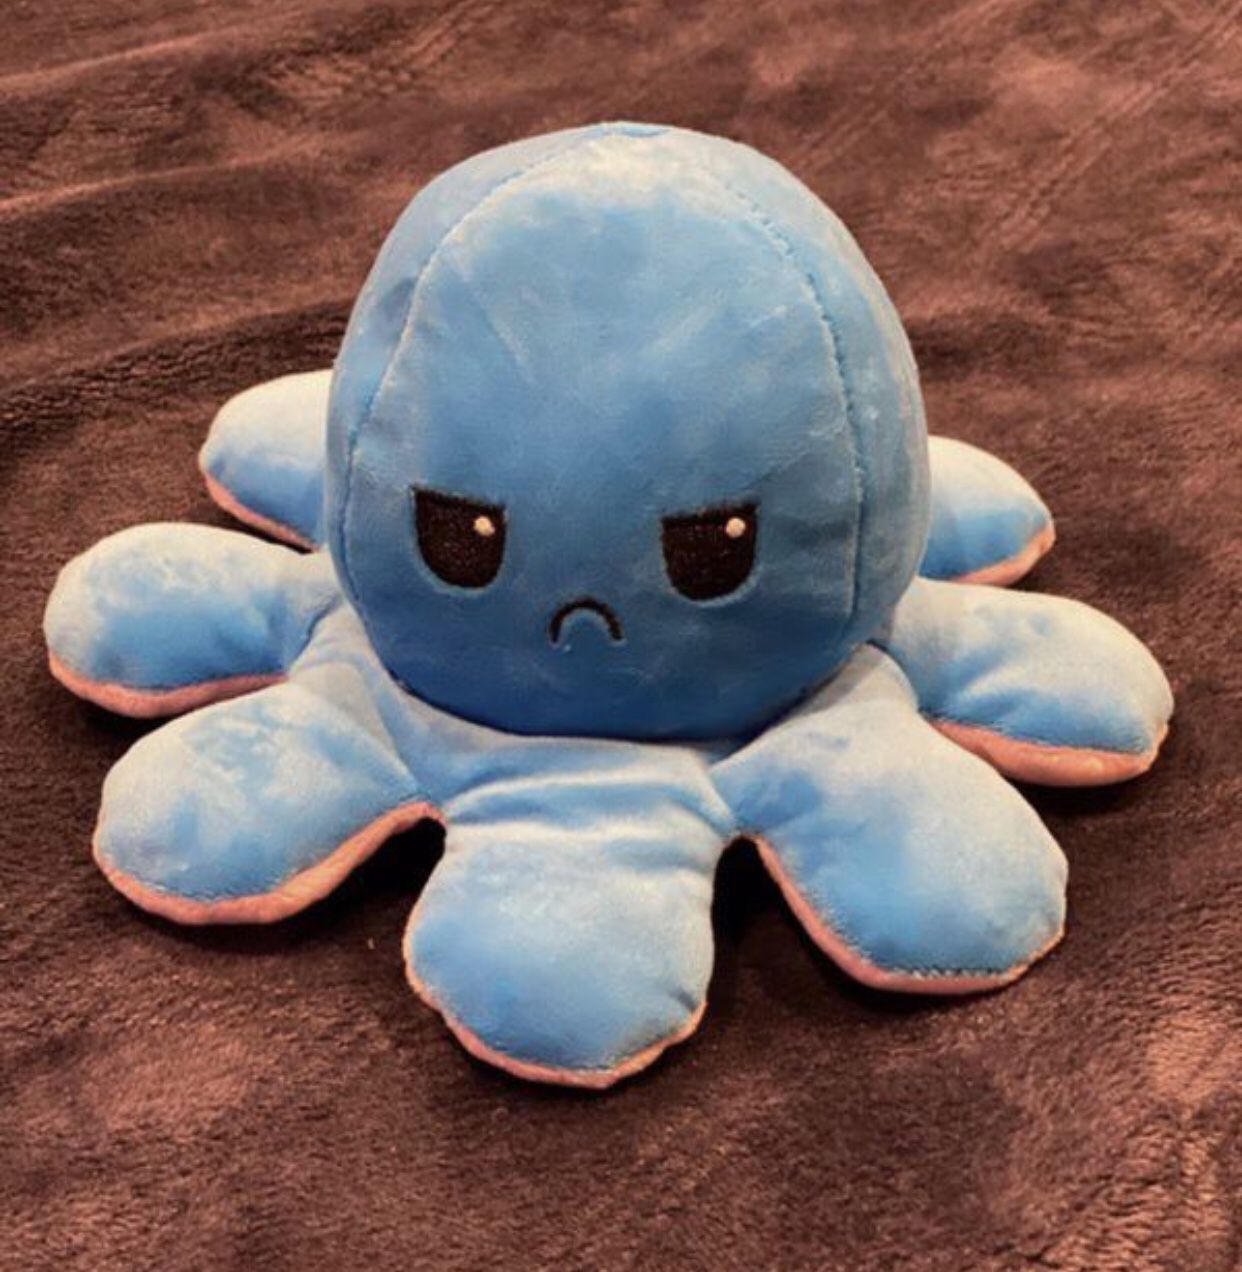 Plush toy octopus teddy bear beanie babies